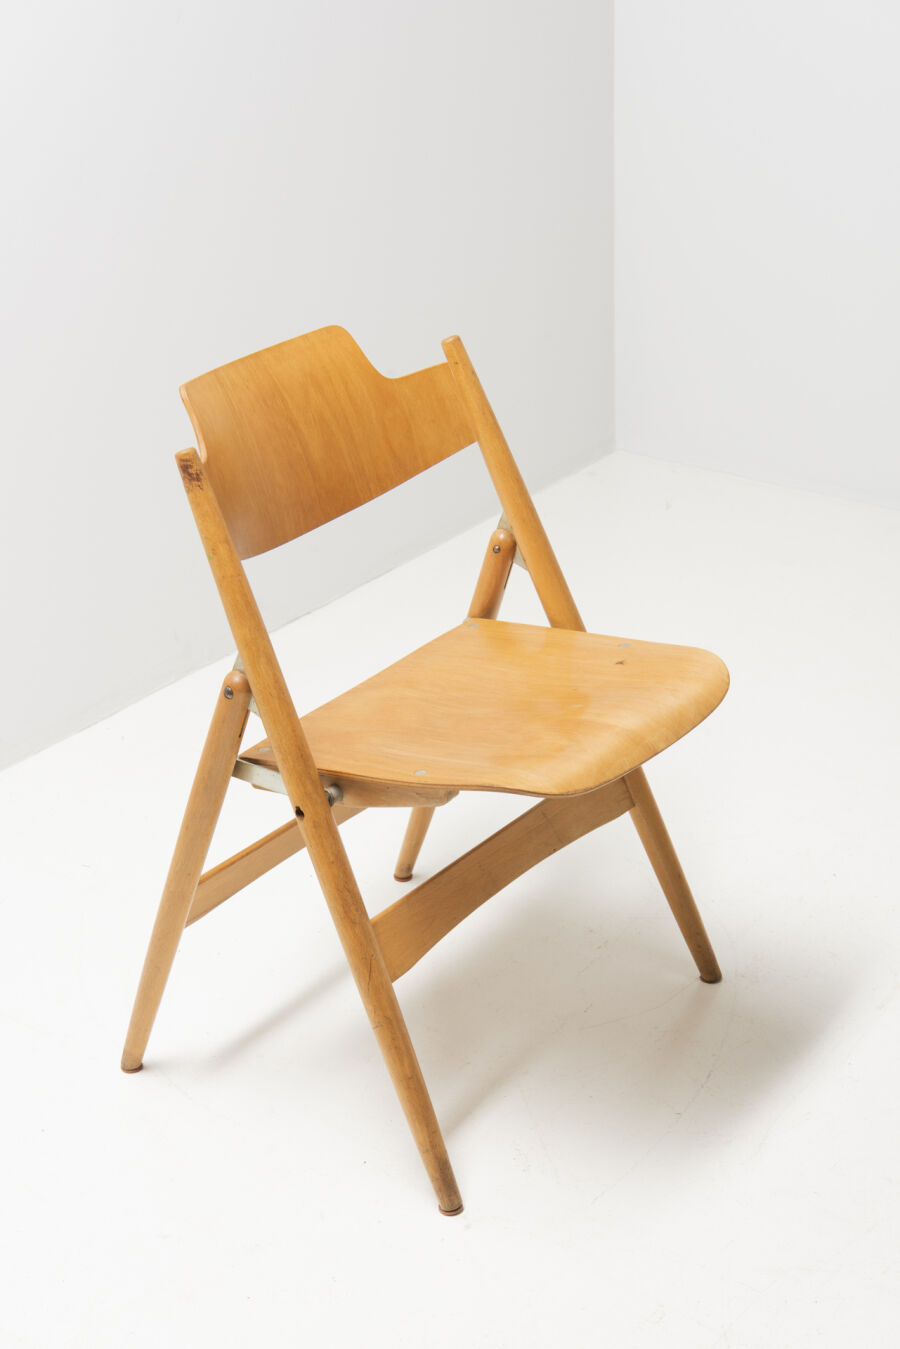 2950egon-eiermann6-folding-chairs-8